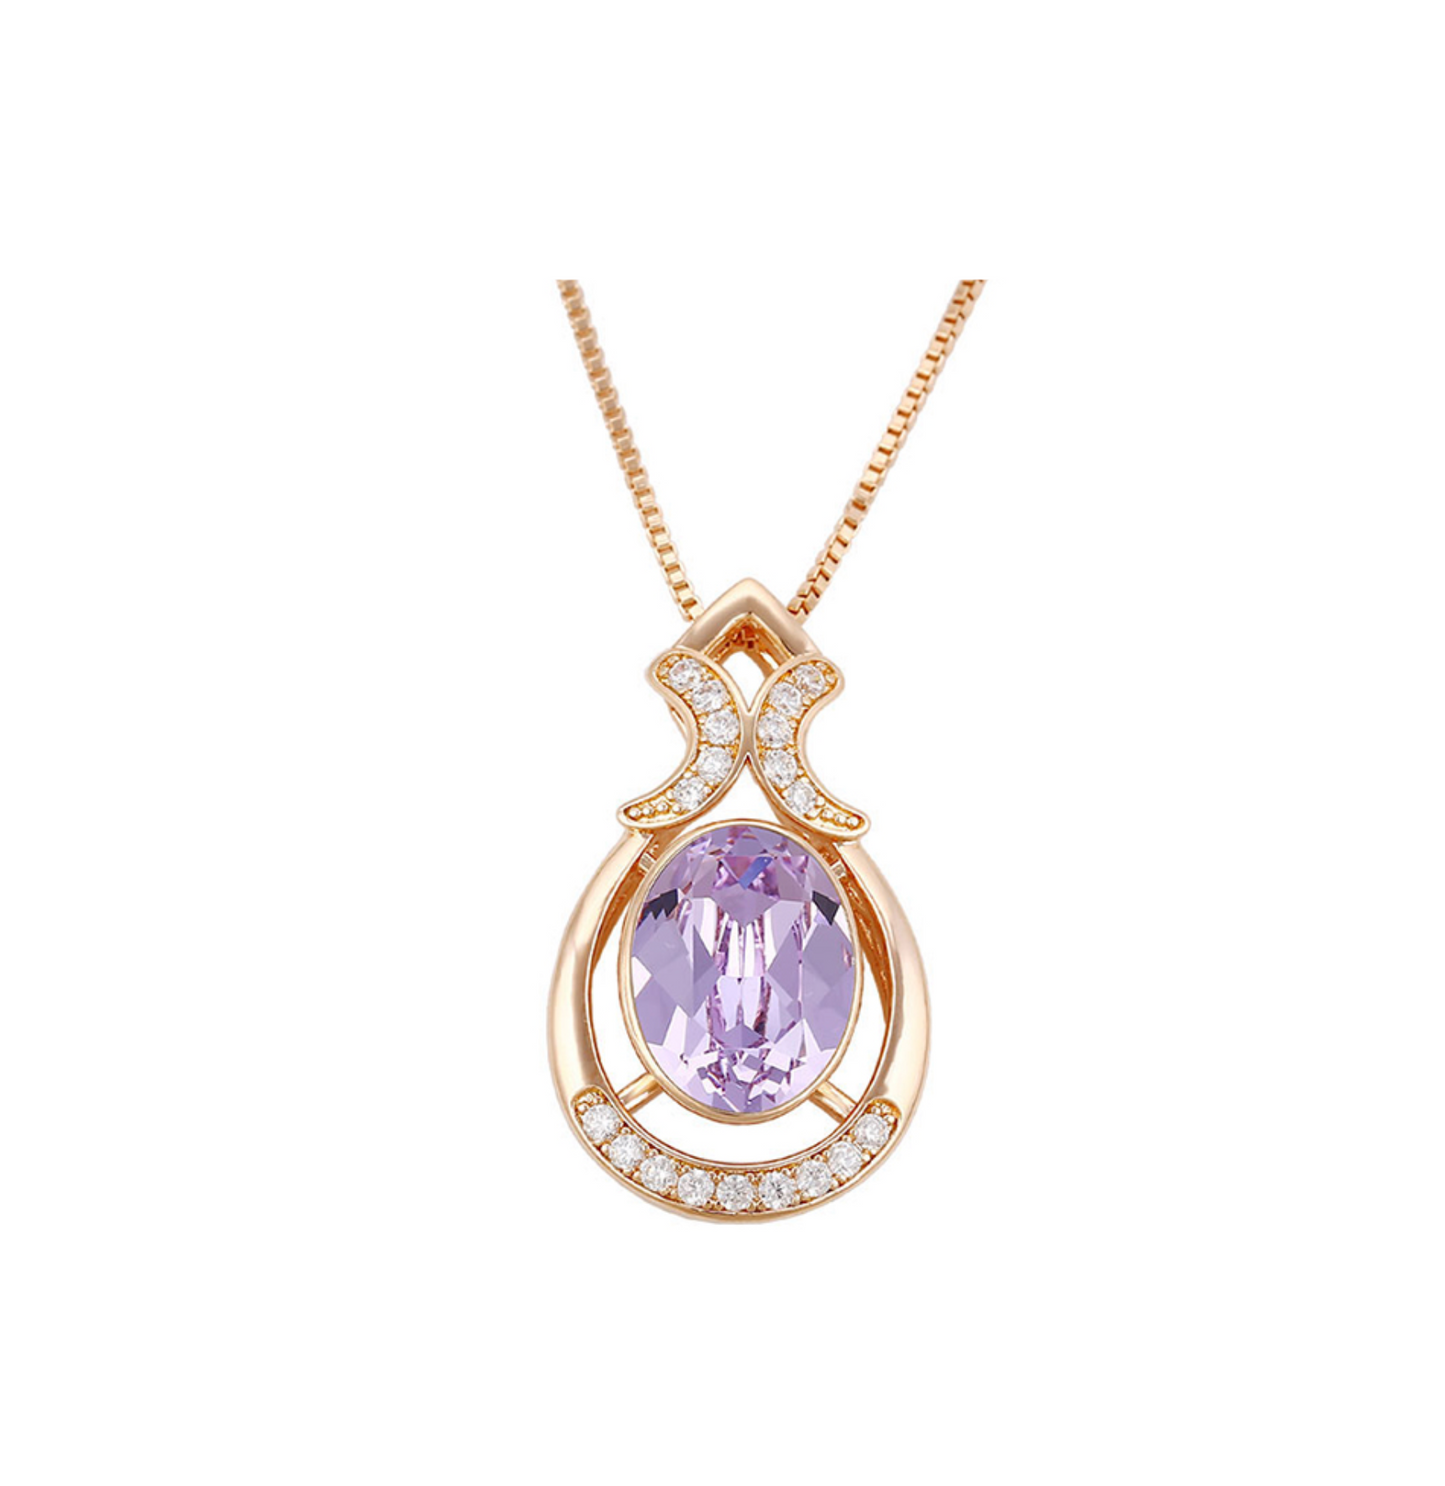 Goldtone Oval Crystal Ornate Pendant Necklace